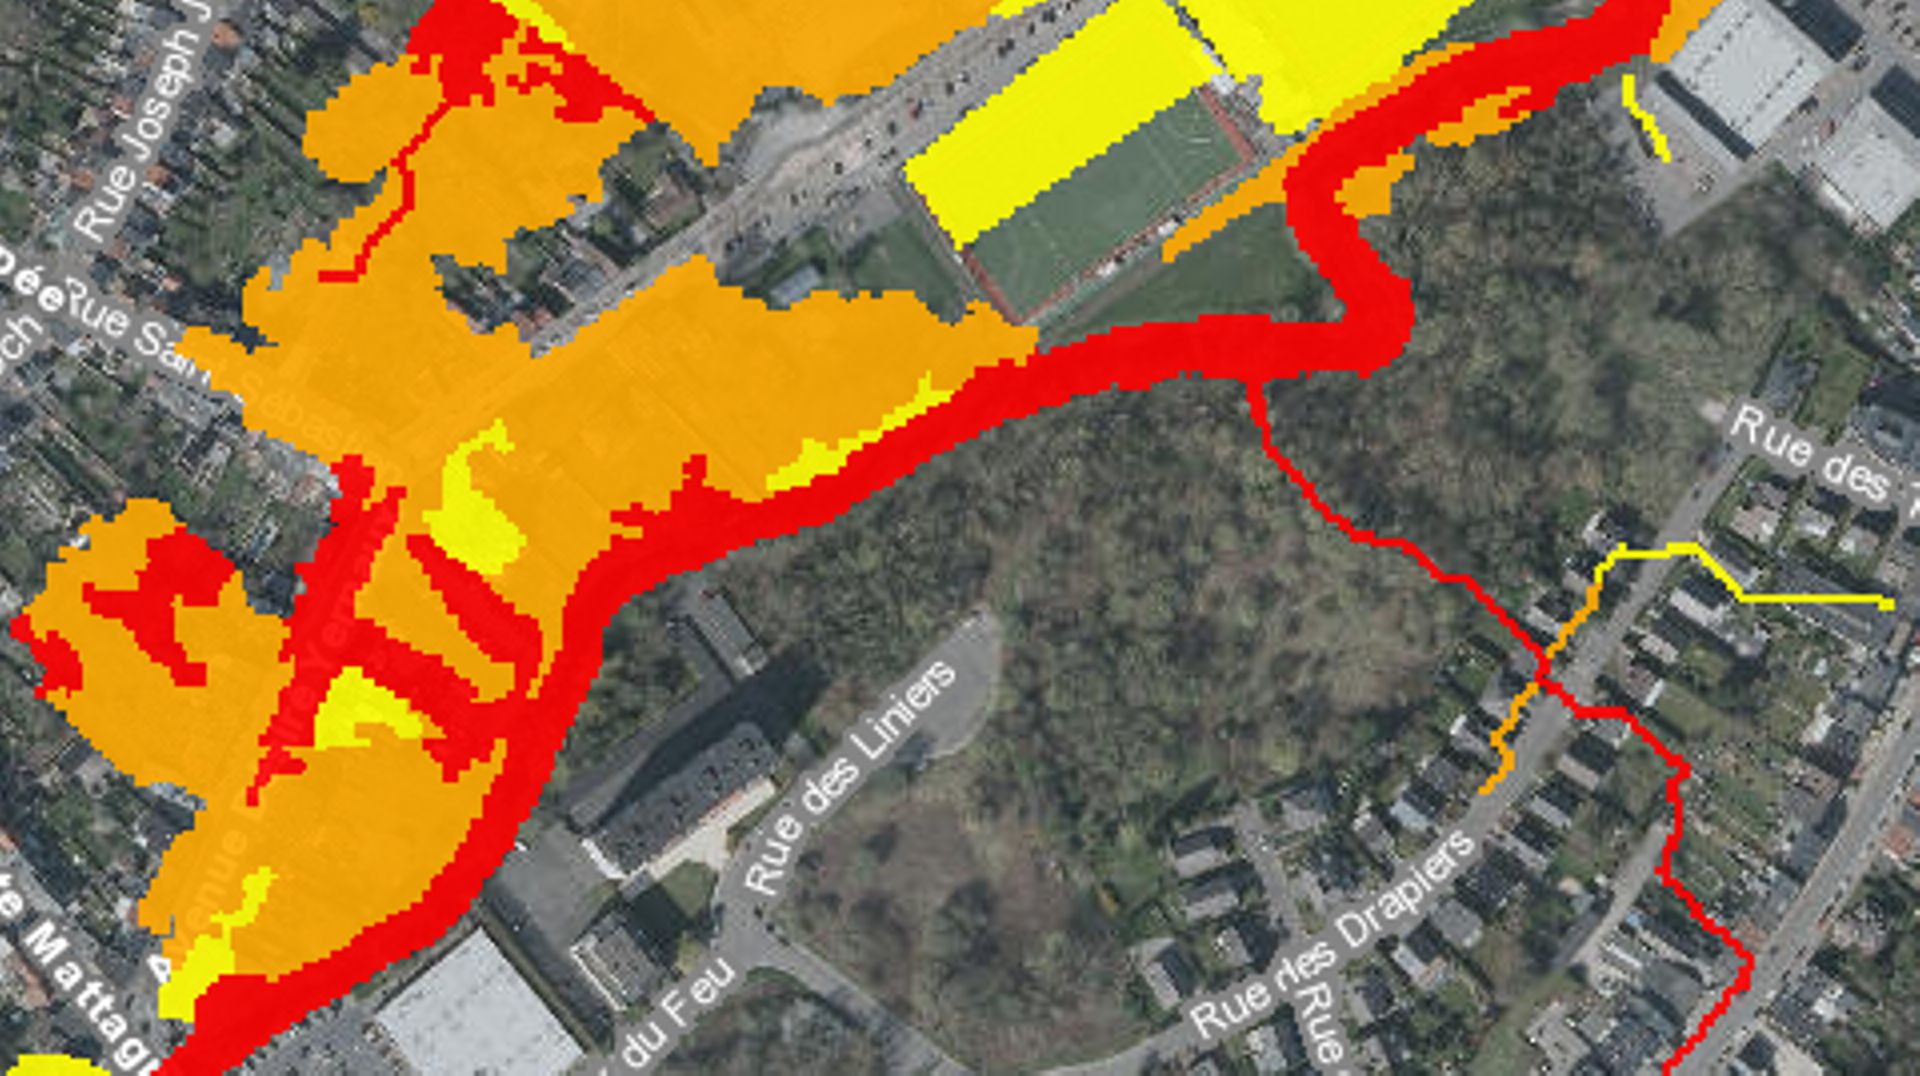 Aléa d’inondation par débordement de cours d’eau ou ruissellement. De risque faible (en jaune) à risque élevé (en rouge). Le site de "Rive Verte" n’est pas inondable. Il n’en va pas de même sur l’autre berge de la Dyle.